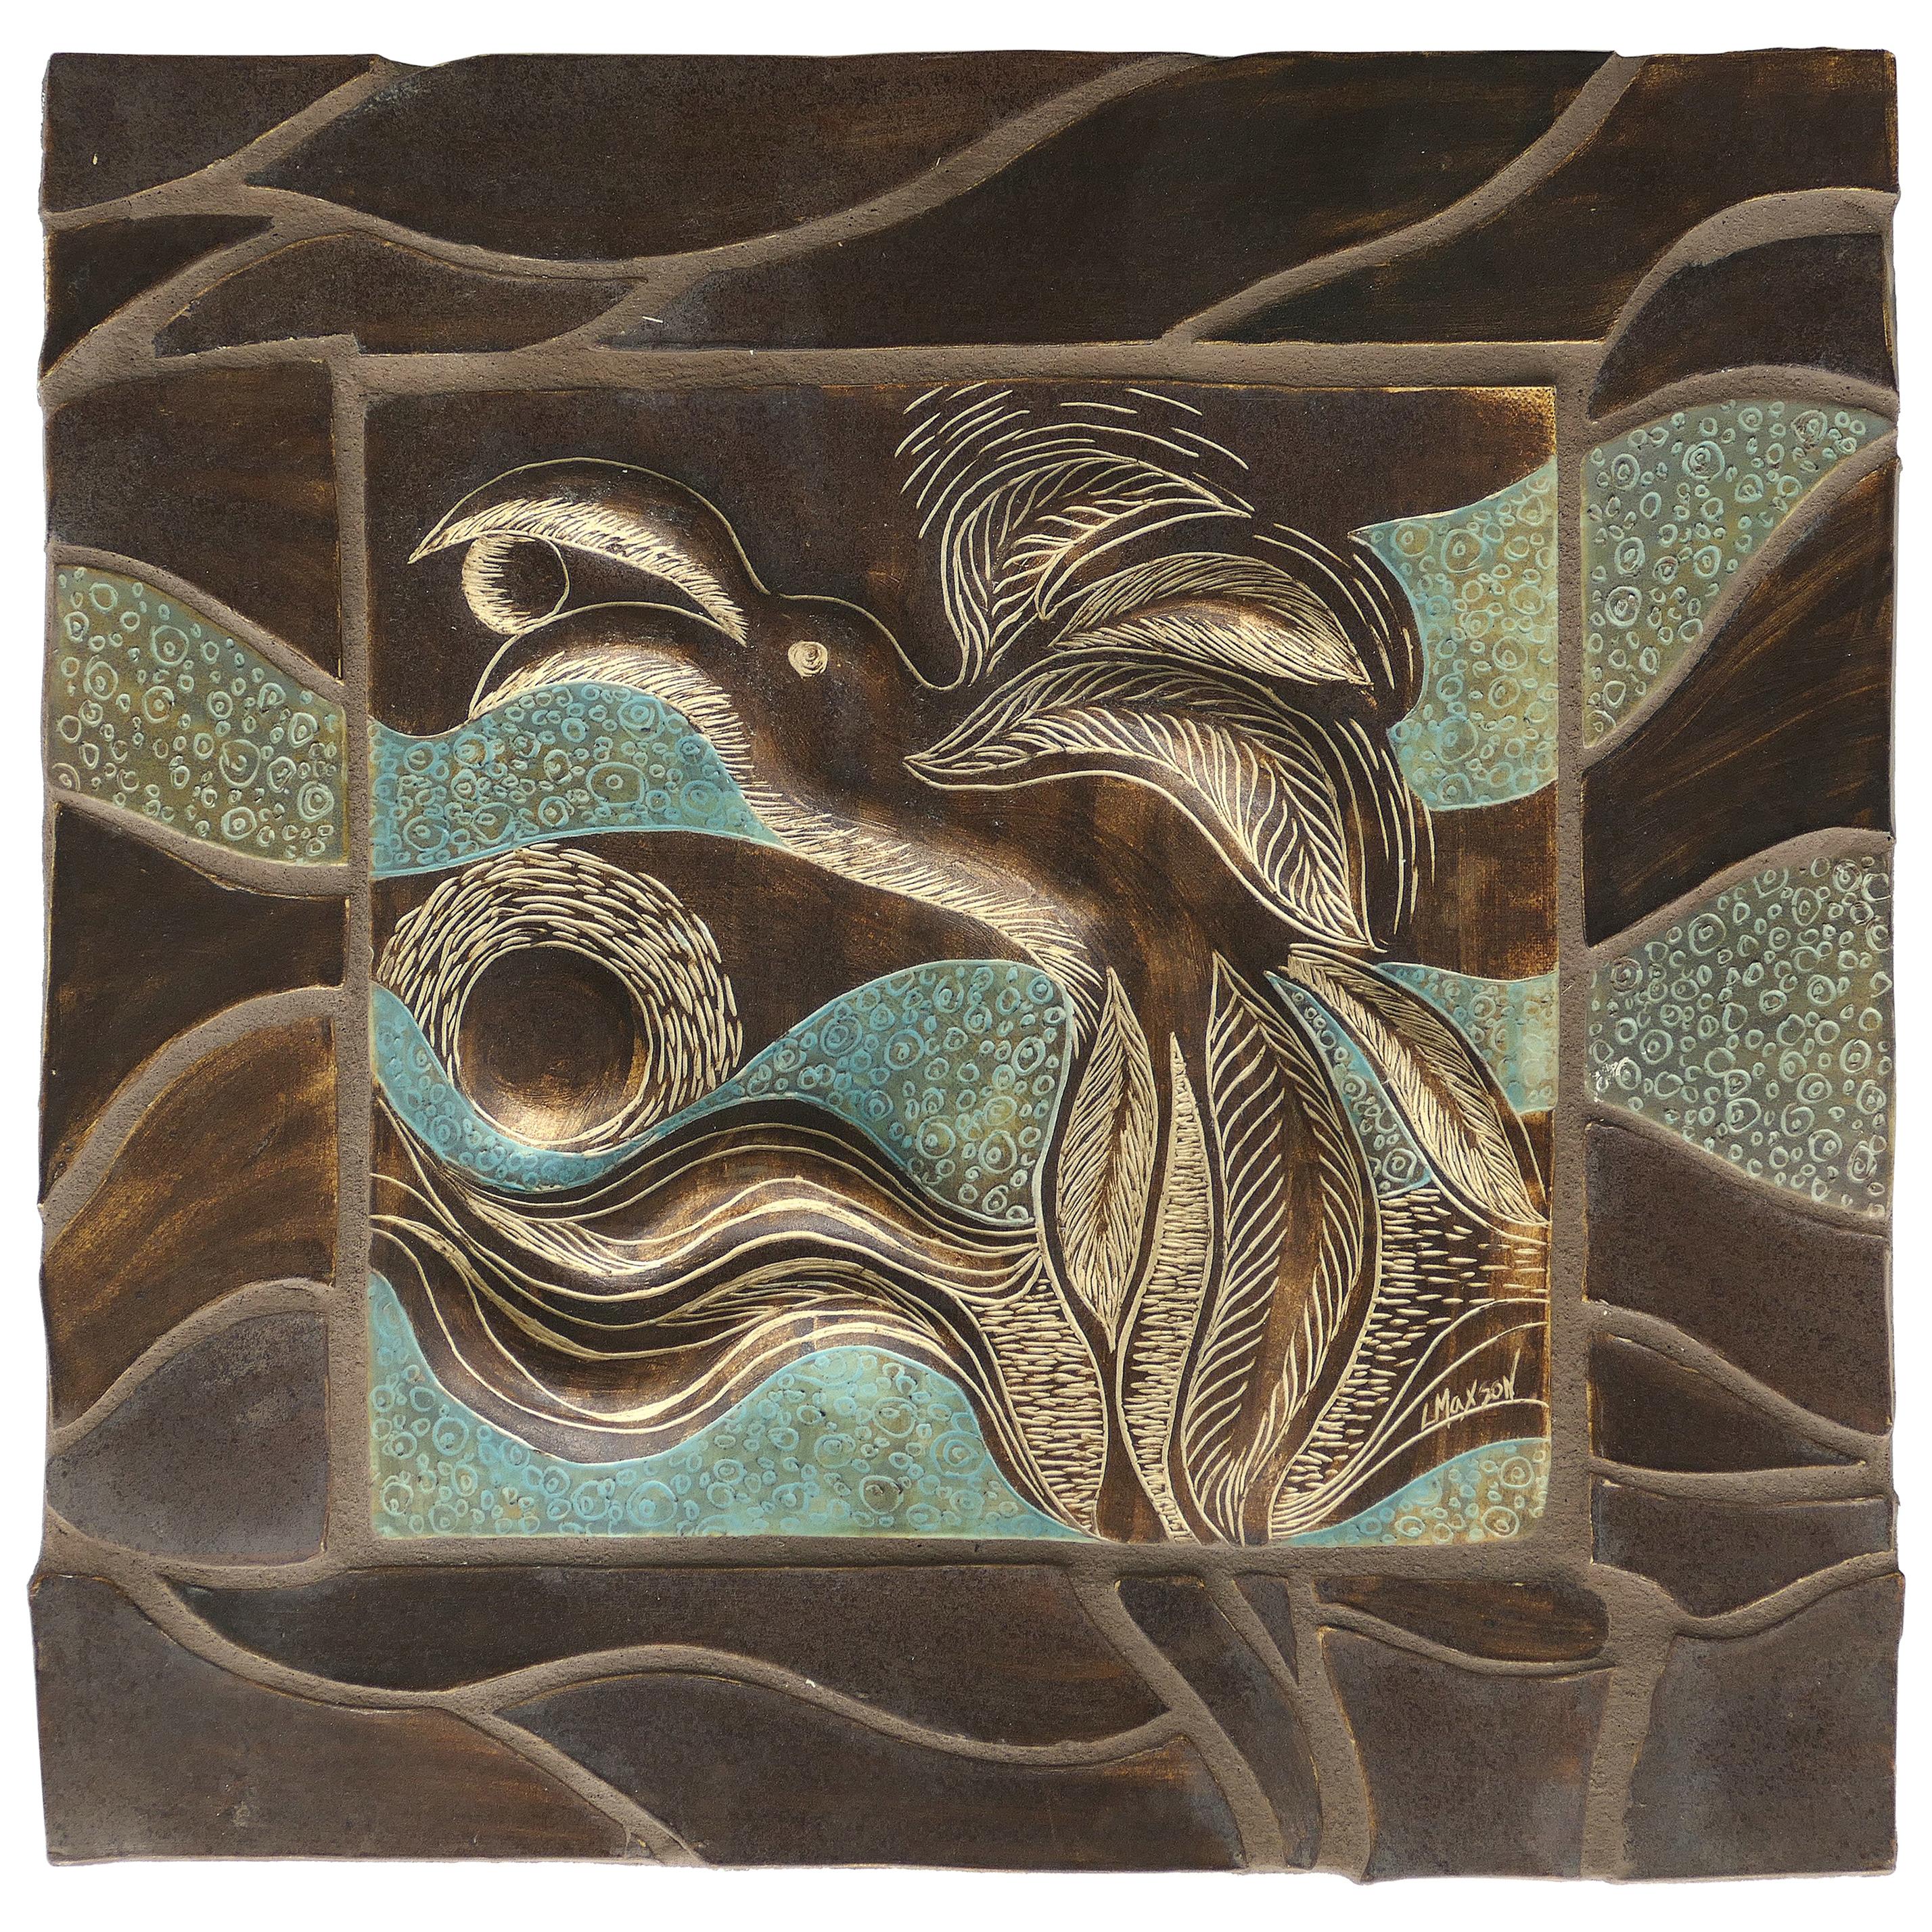 Linda Maxson California Artist Ceramic Plaque Depicting a Bird For Sale